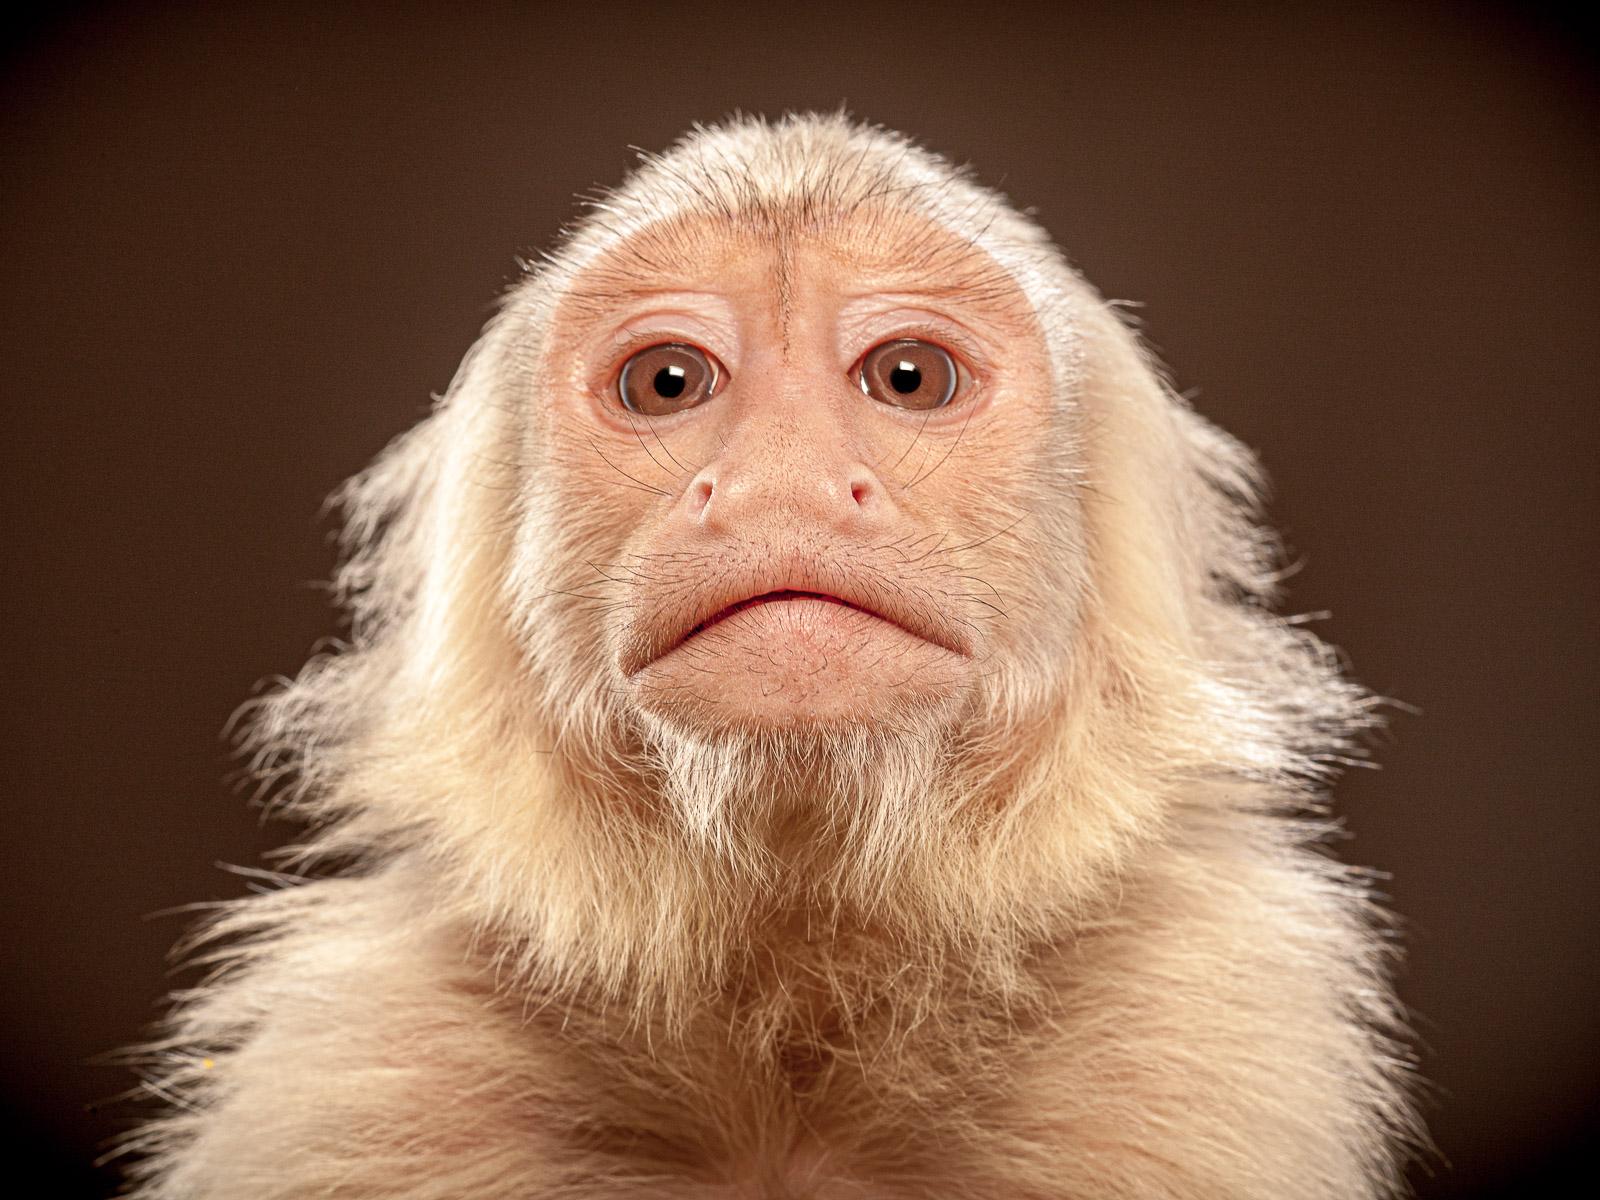 Capuchin 2- signierter Tier-Kunstdruck in limitierter Auflage, brauner und weißer Affen 